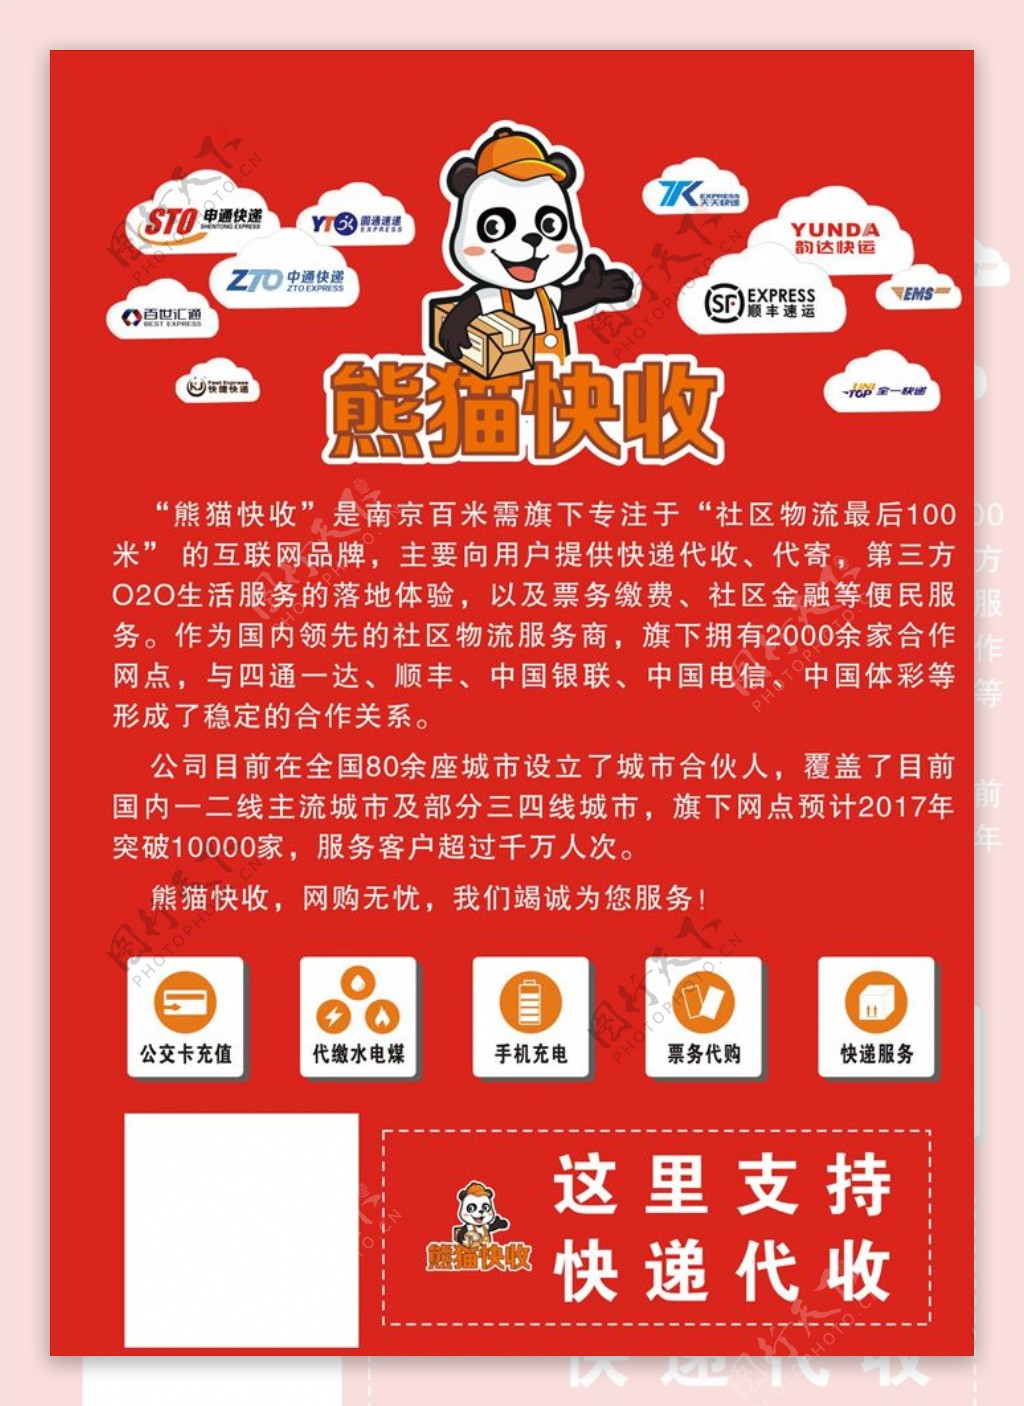 熊猫快收公司海报便民图标